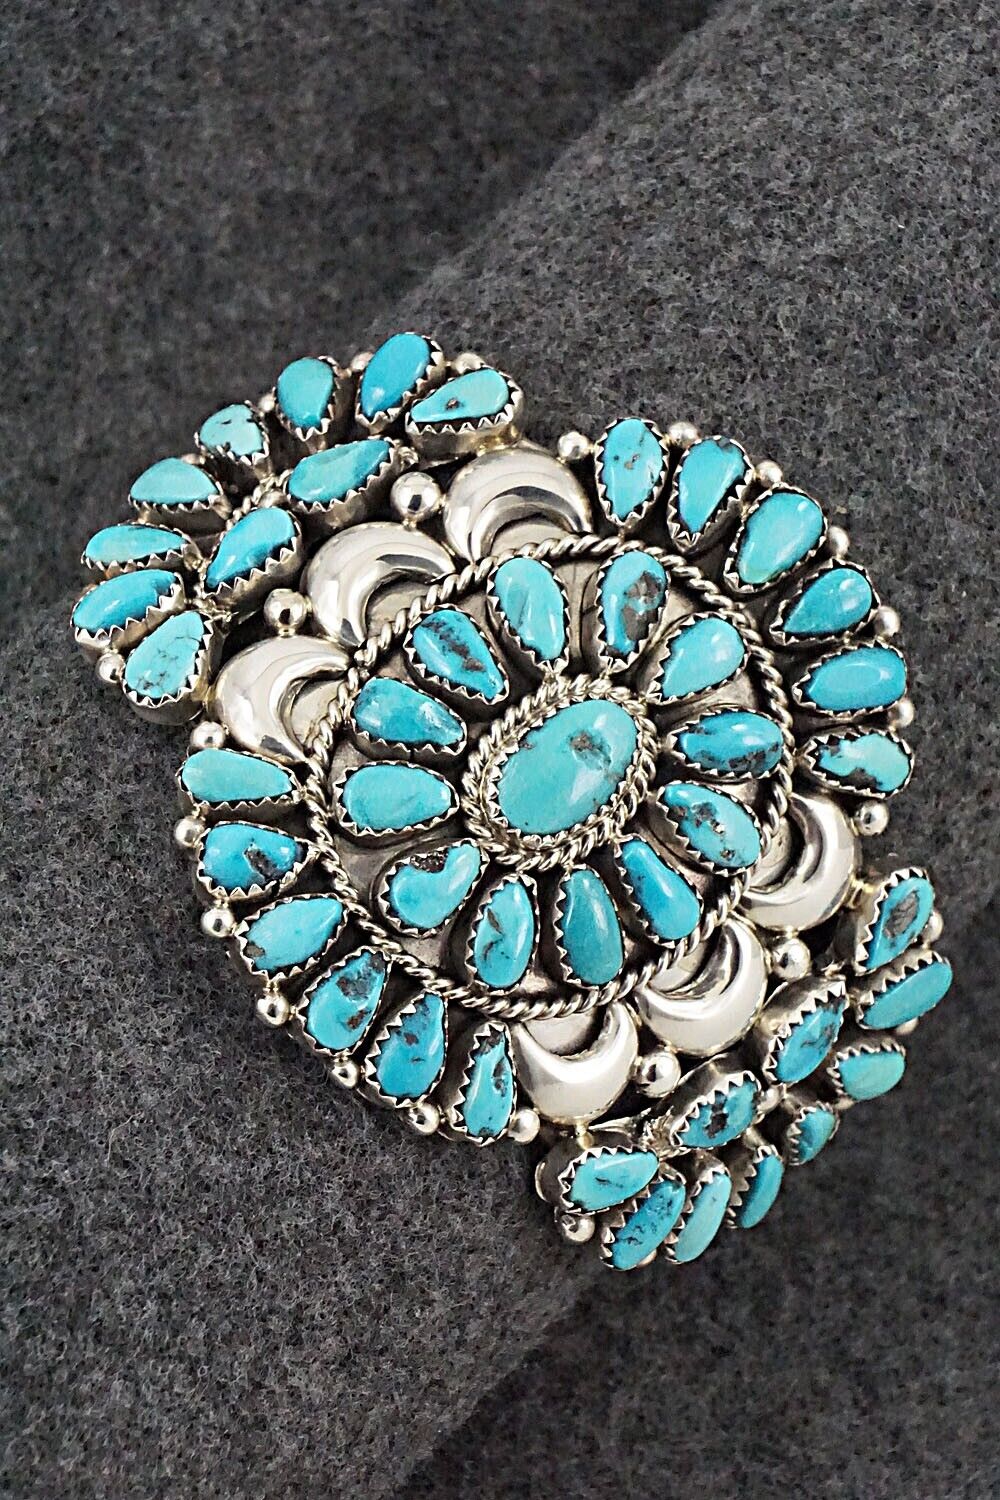 Turquoise & Sterling Silver Bracelet - Eunise Wilson